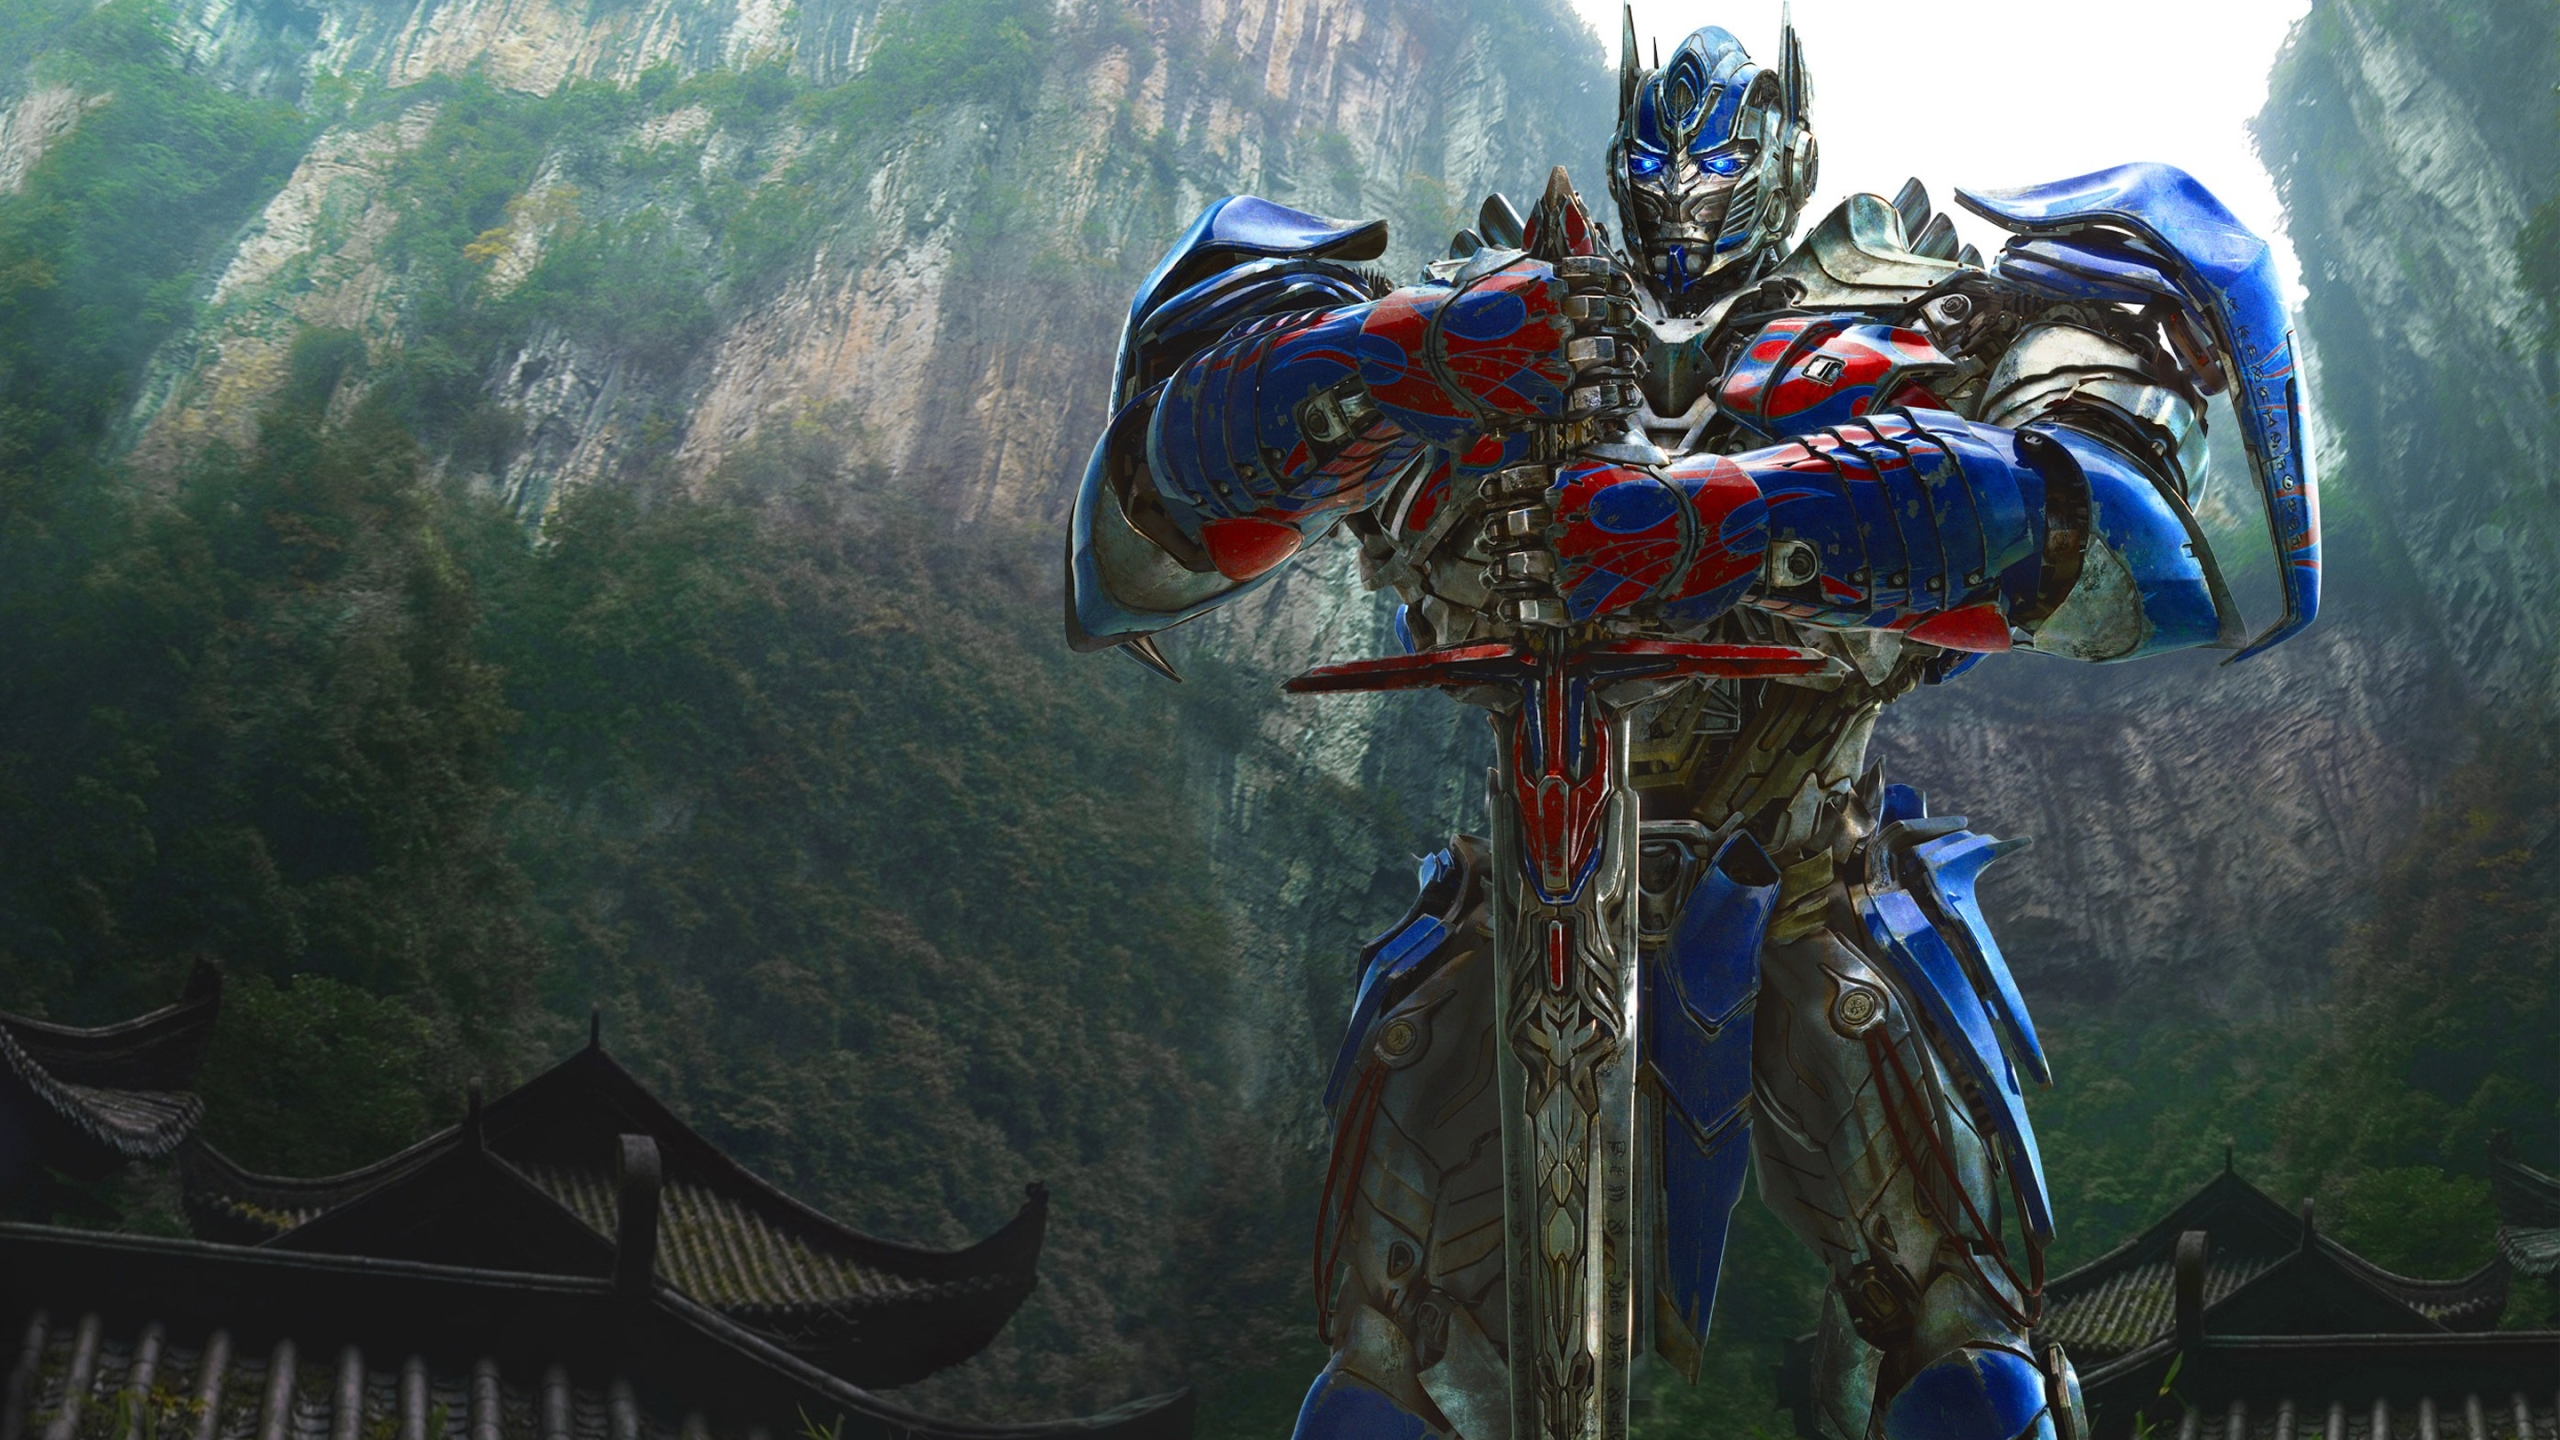 Transformers film series - Wikipedia